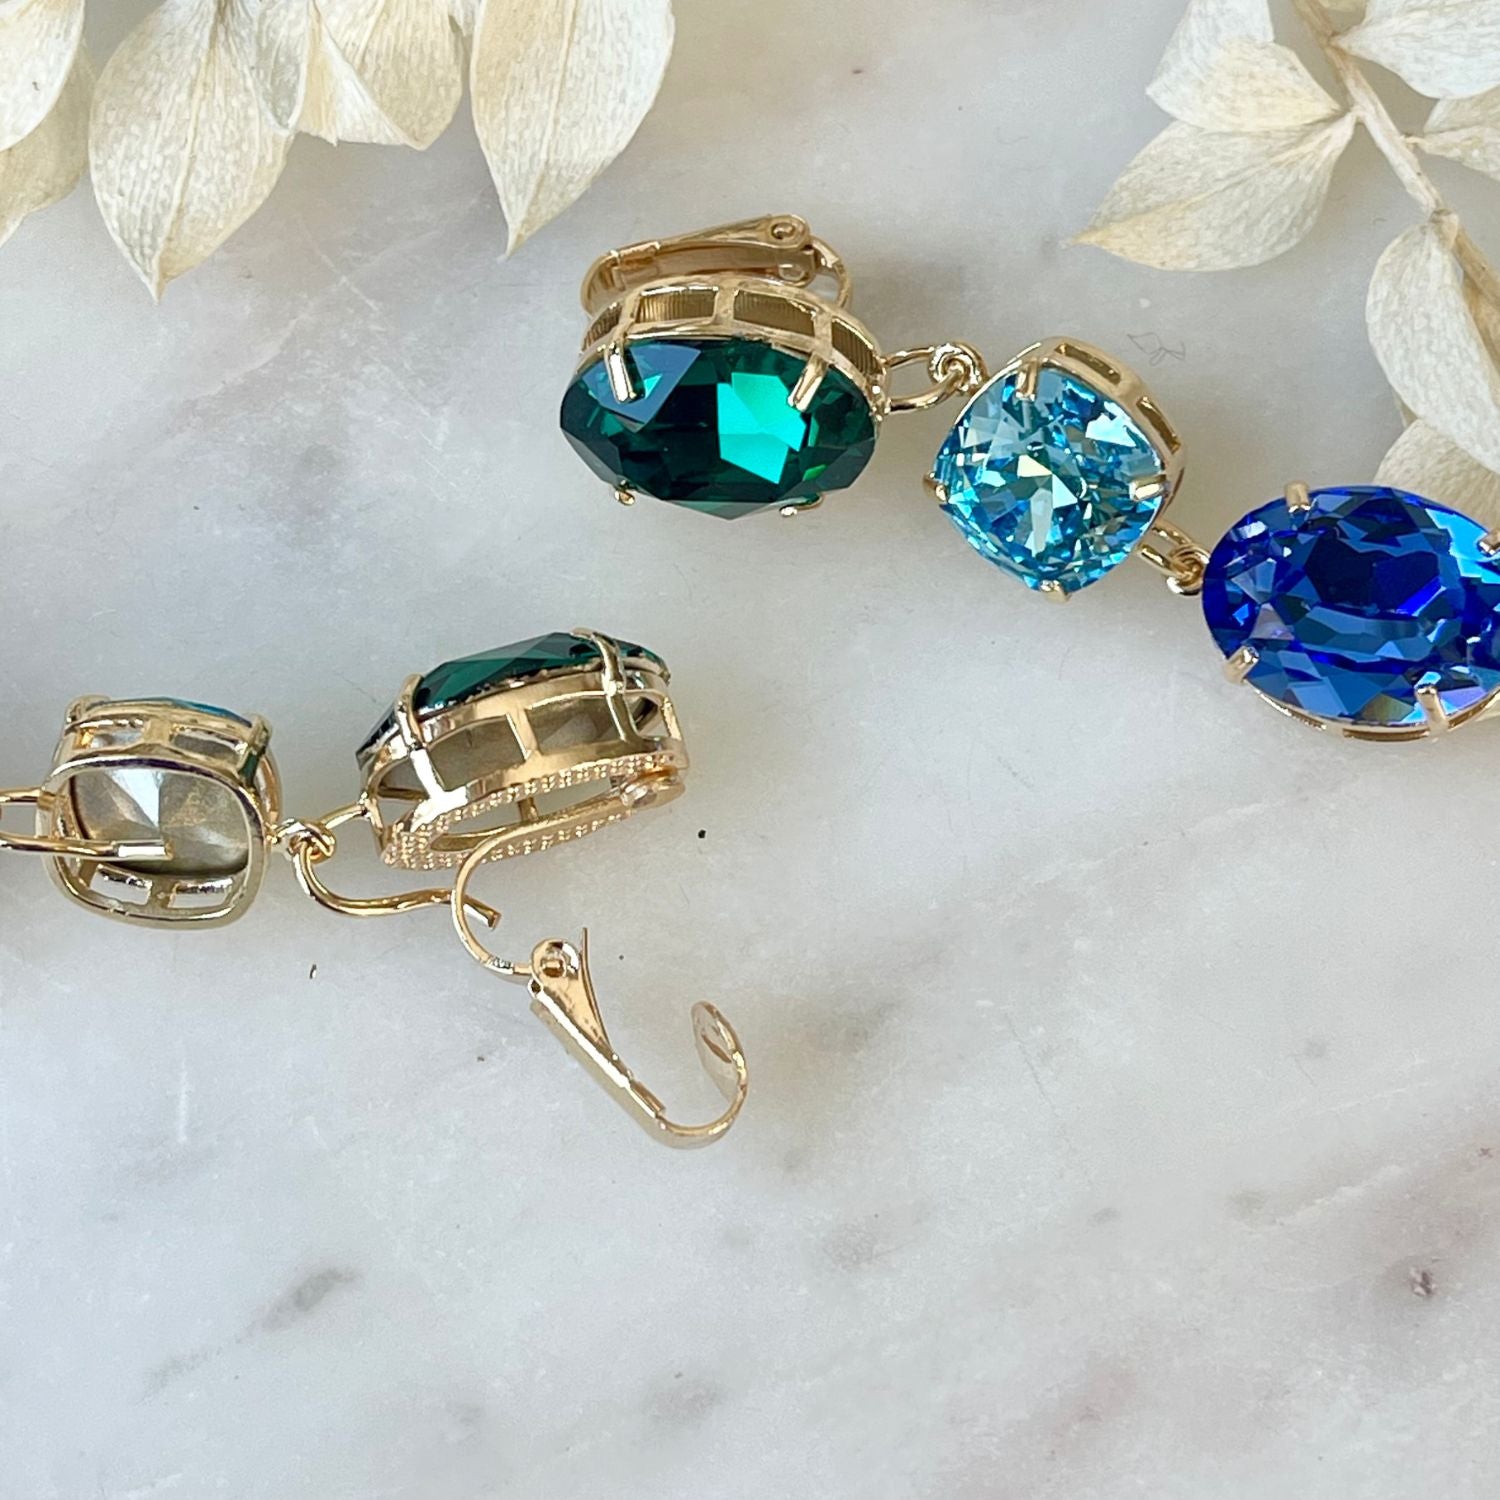 Erleben Sie die Eleganz der "GLOW"-Ohrringe mit  grünen und blauen Kristallen. Die grüne Basis kann separat getragen werden und verleiht einen dezenten, dennoch wunderschönen Touch. Die weltberühmten Swarovski Kristalle sorgen für Glanz und zeitlose Eleganz.